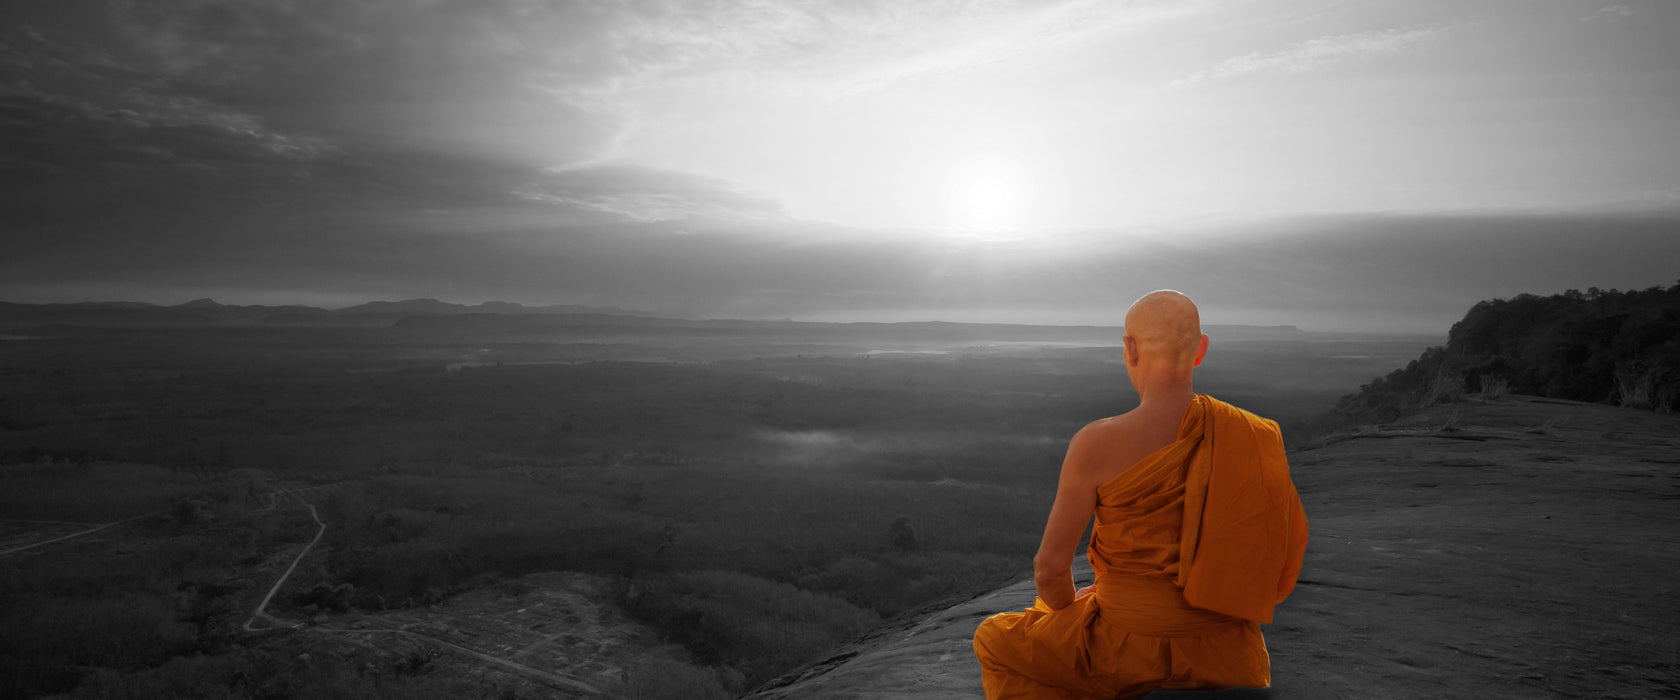 Mönch meditiert auf Felsvorsprung B&W Detail, Glasbild Panorama